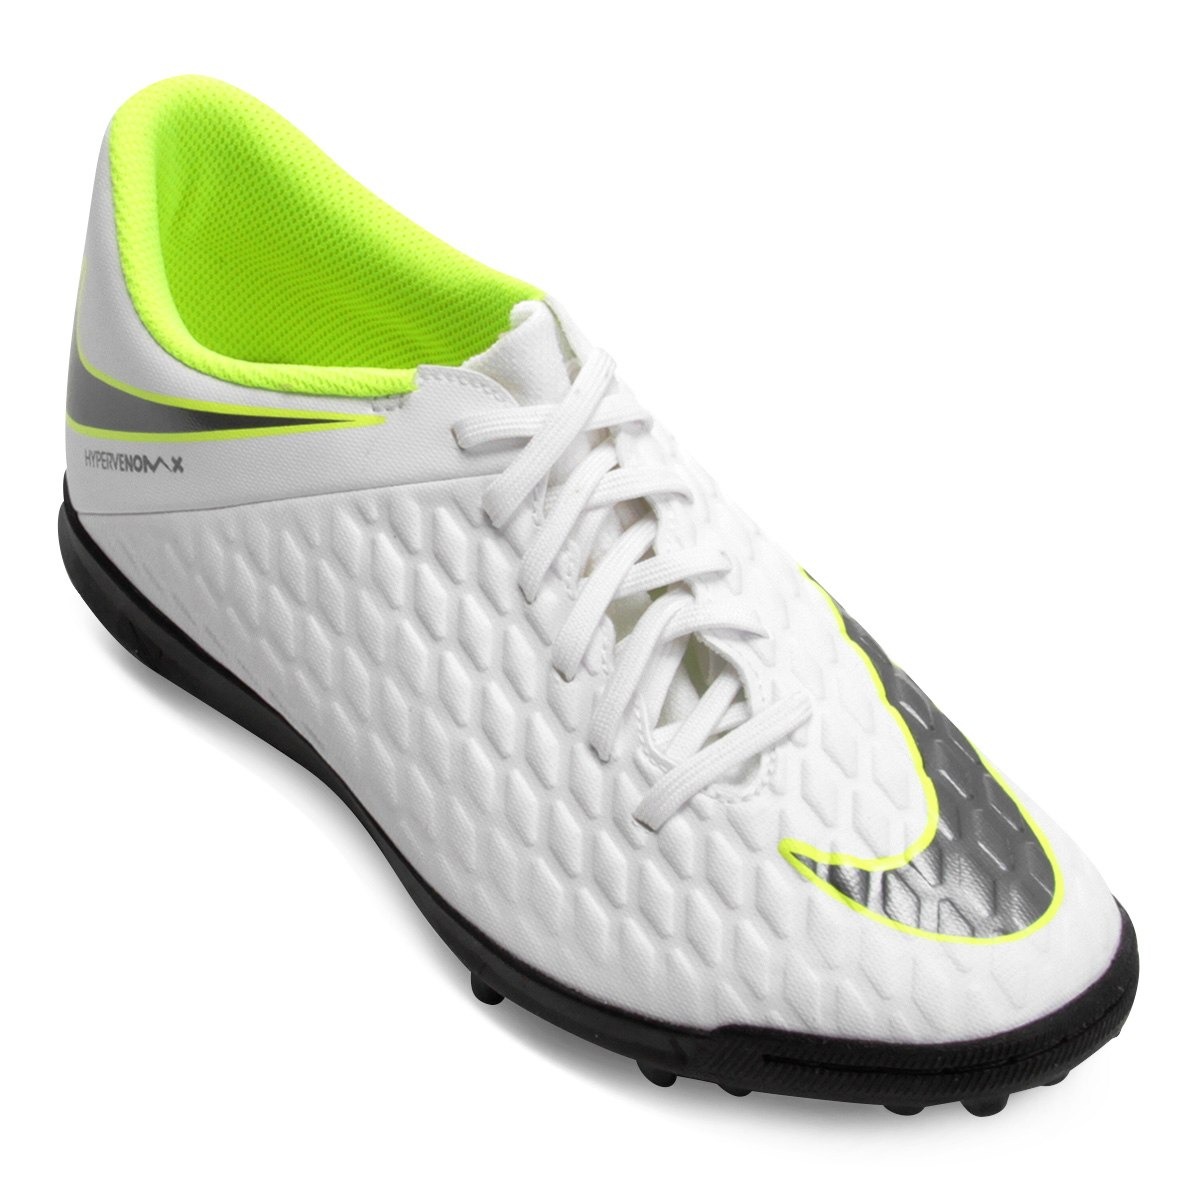 Nike Hypervenom Phantom 3 DF FG Soccer Cleats eBay